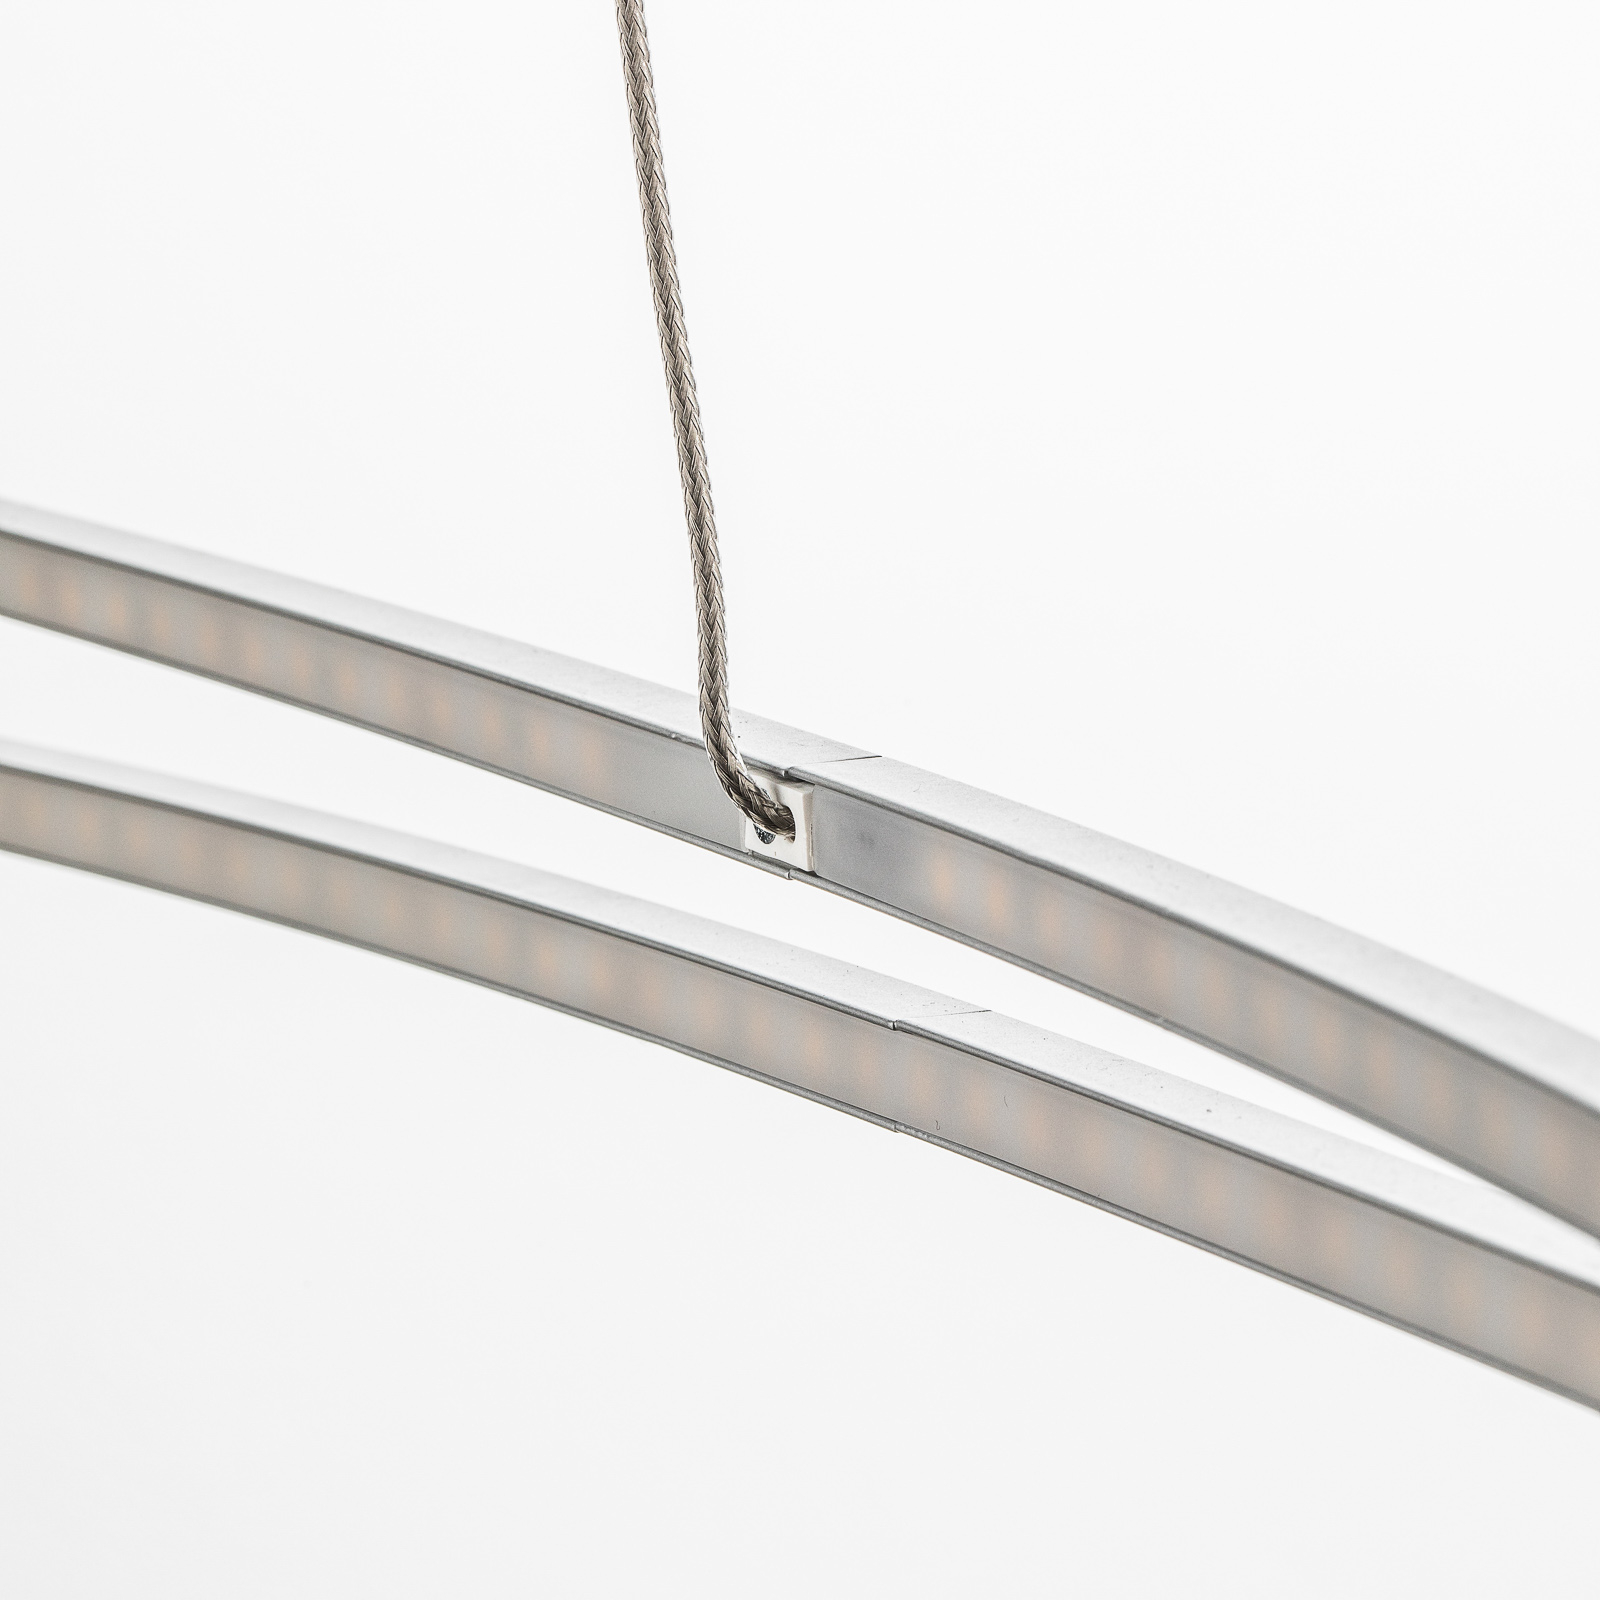 Geslagen vrachtwagen schot Dwaal Ovale LED hanglamp Flair, aluminium | Lampen24.be